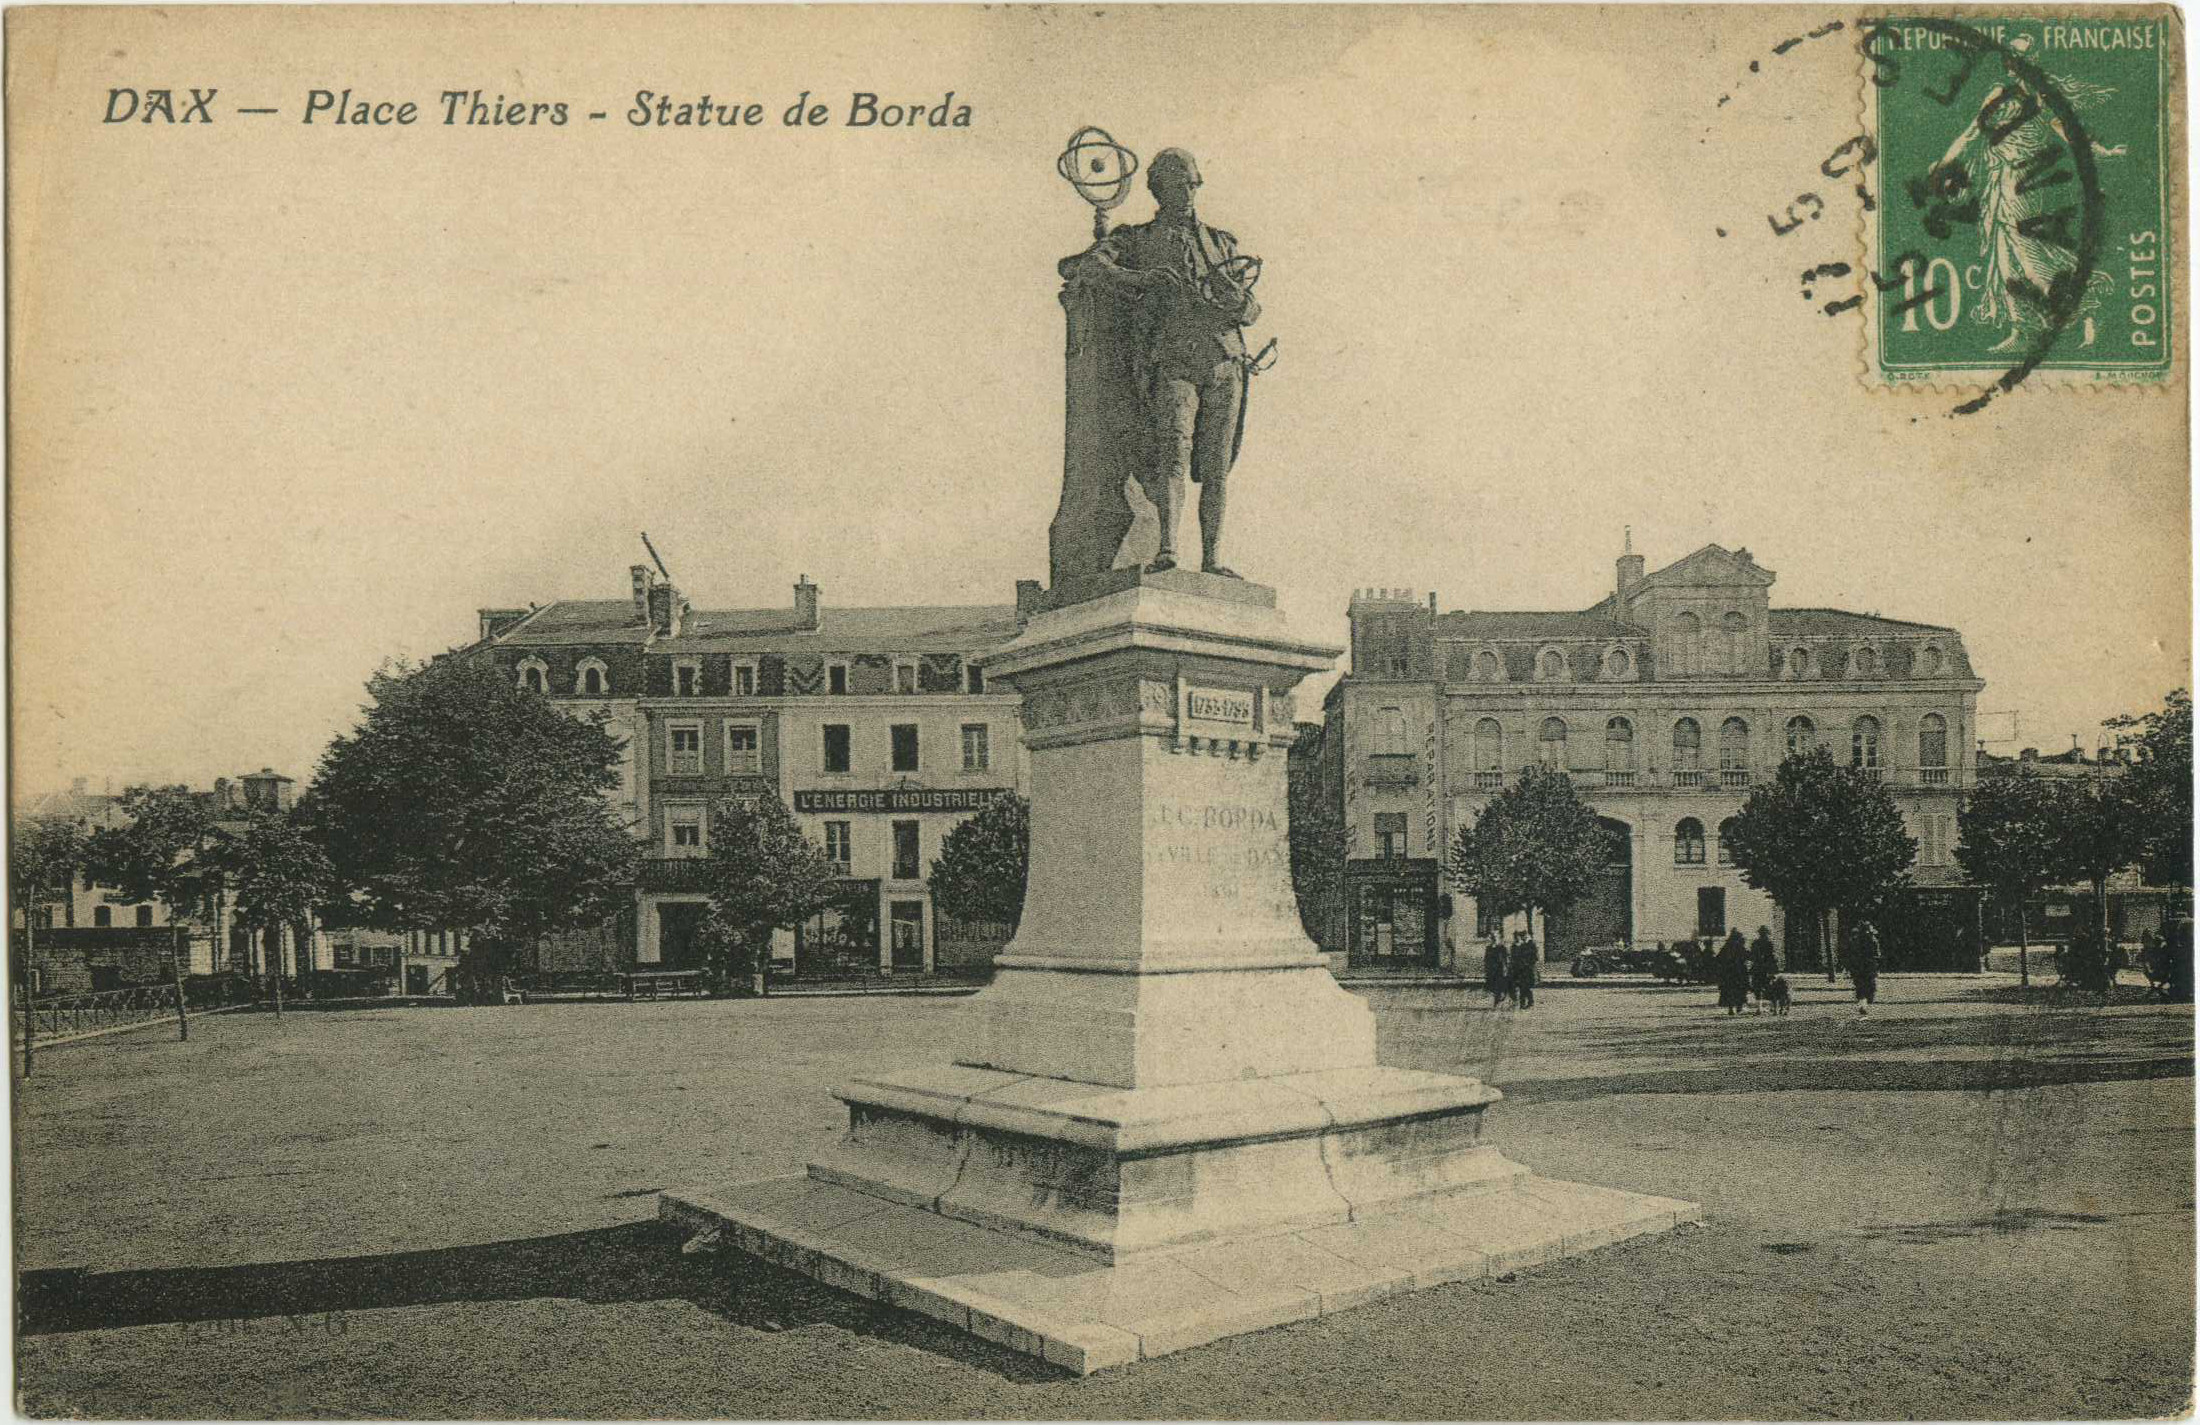 Dax - Place Thiers - Statue de Borda